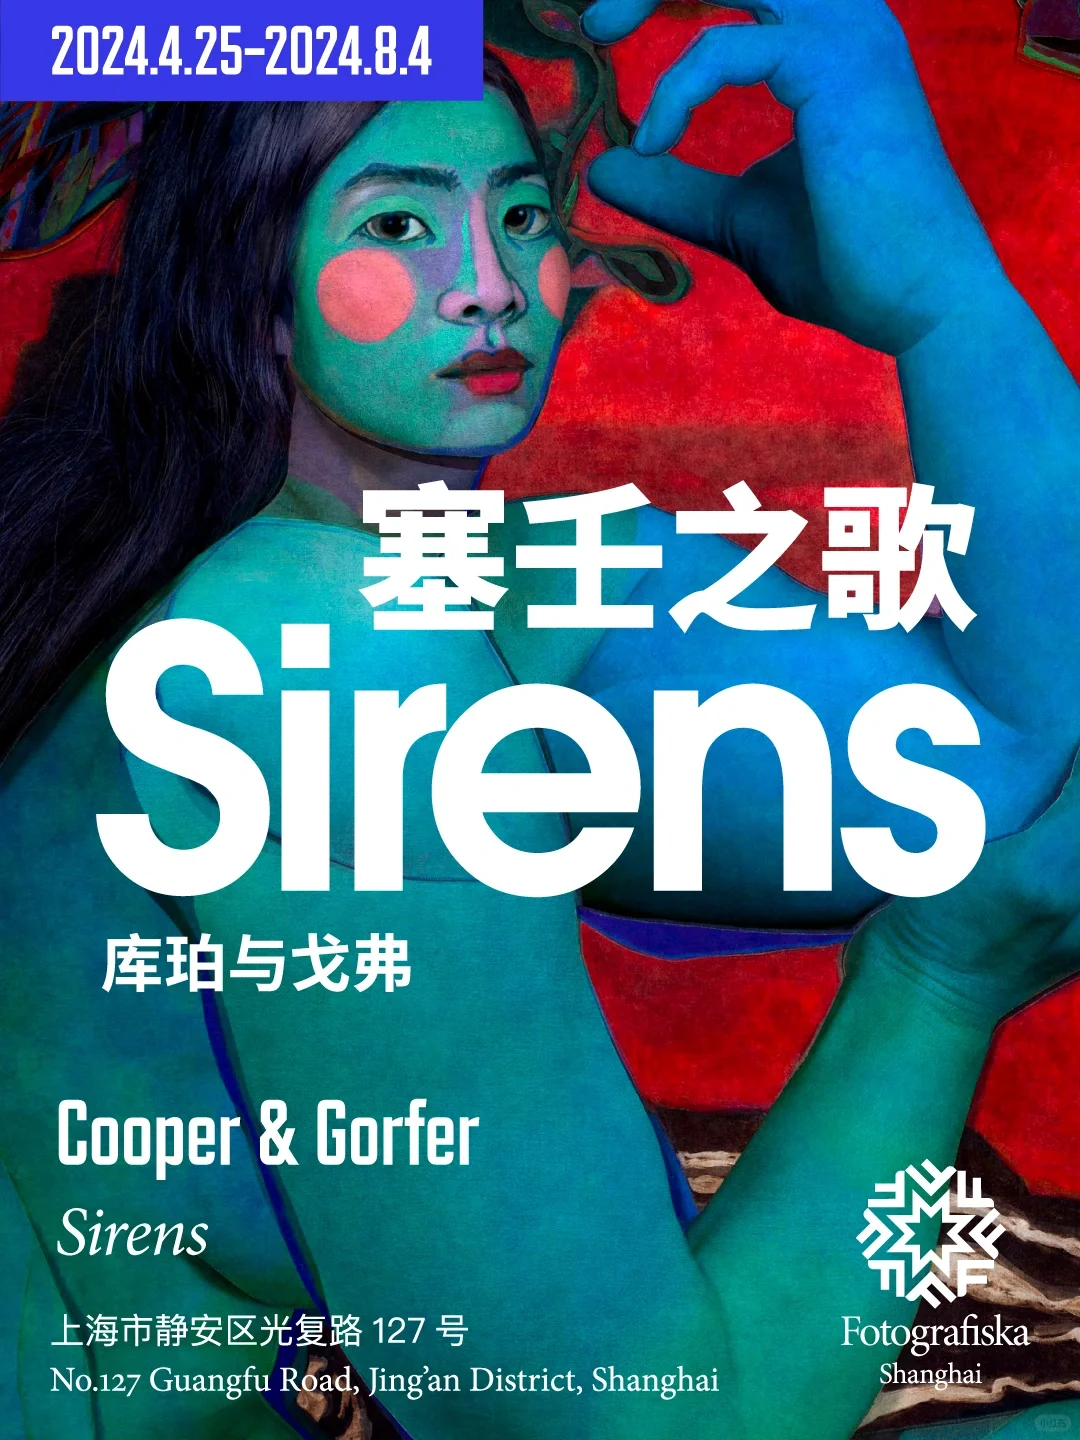 塞壬之歌(Sirens) Cooper & Gorfer